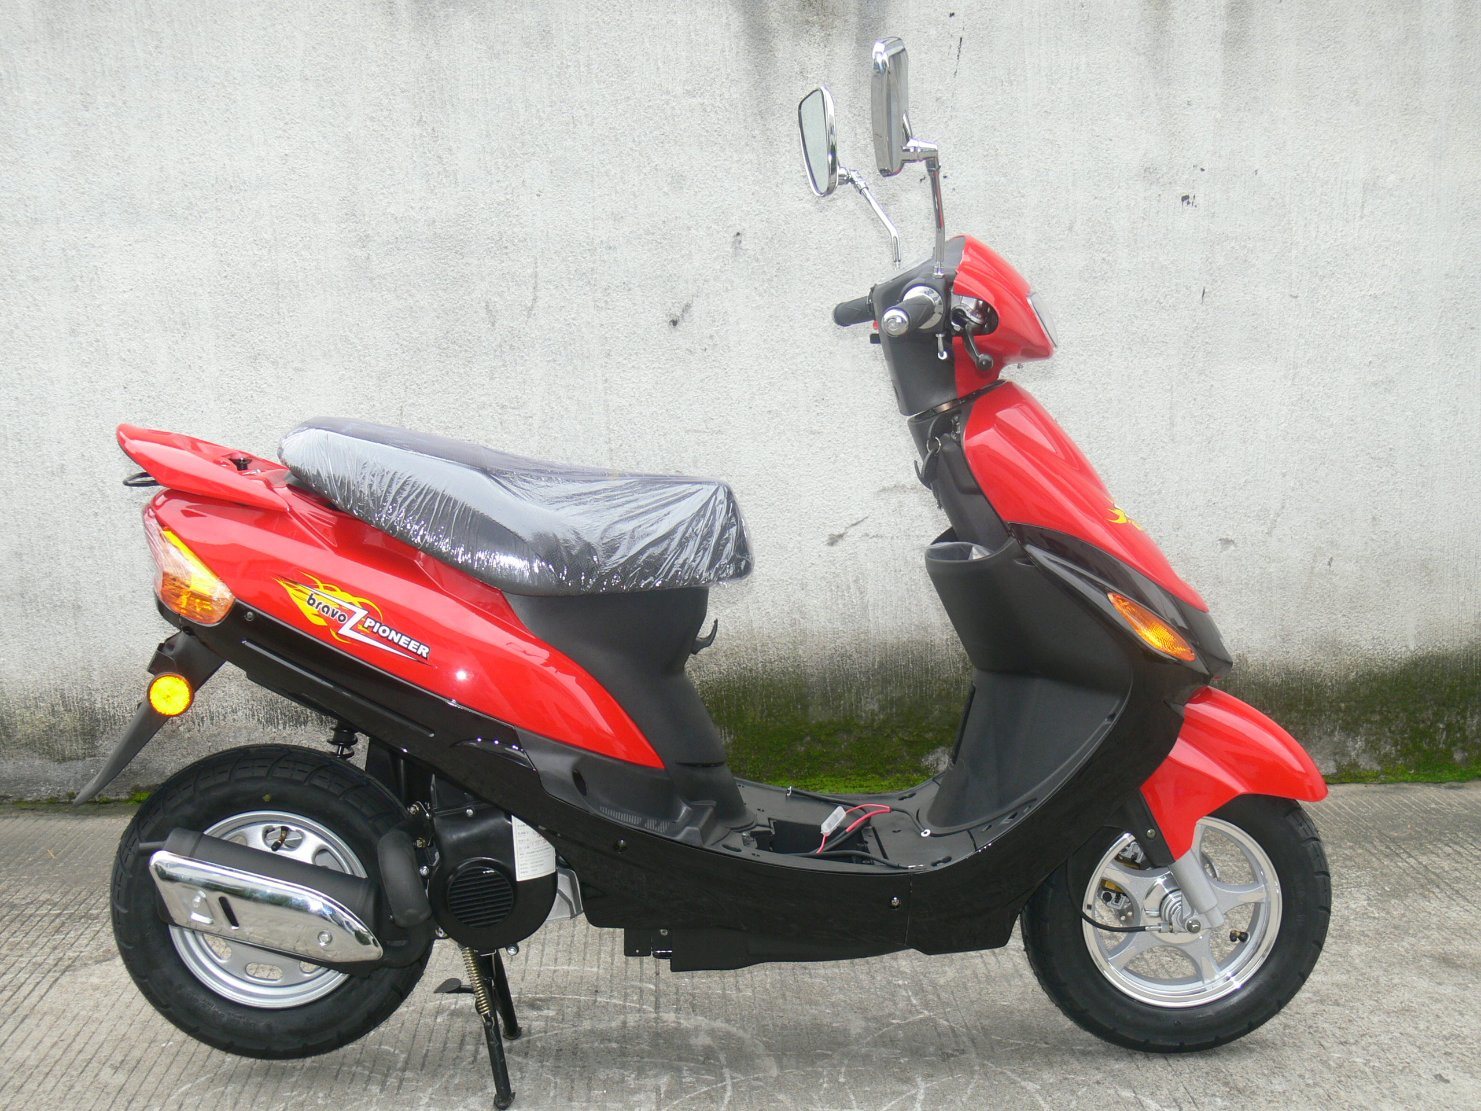 Scooter de gasolina de 50 cc Sunny Scooter de 1 cilindro y 4 tiempos refrigerado por aire